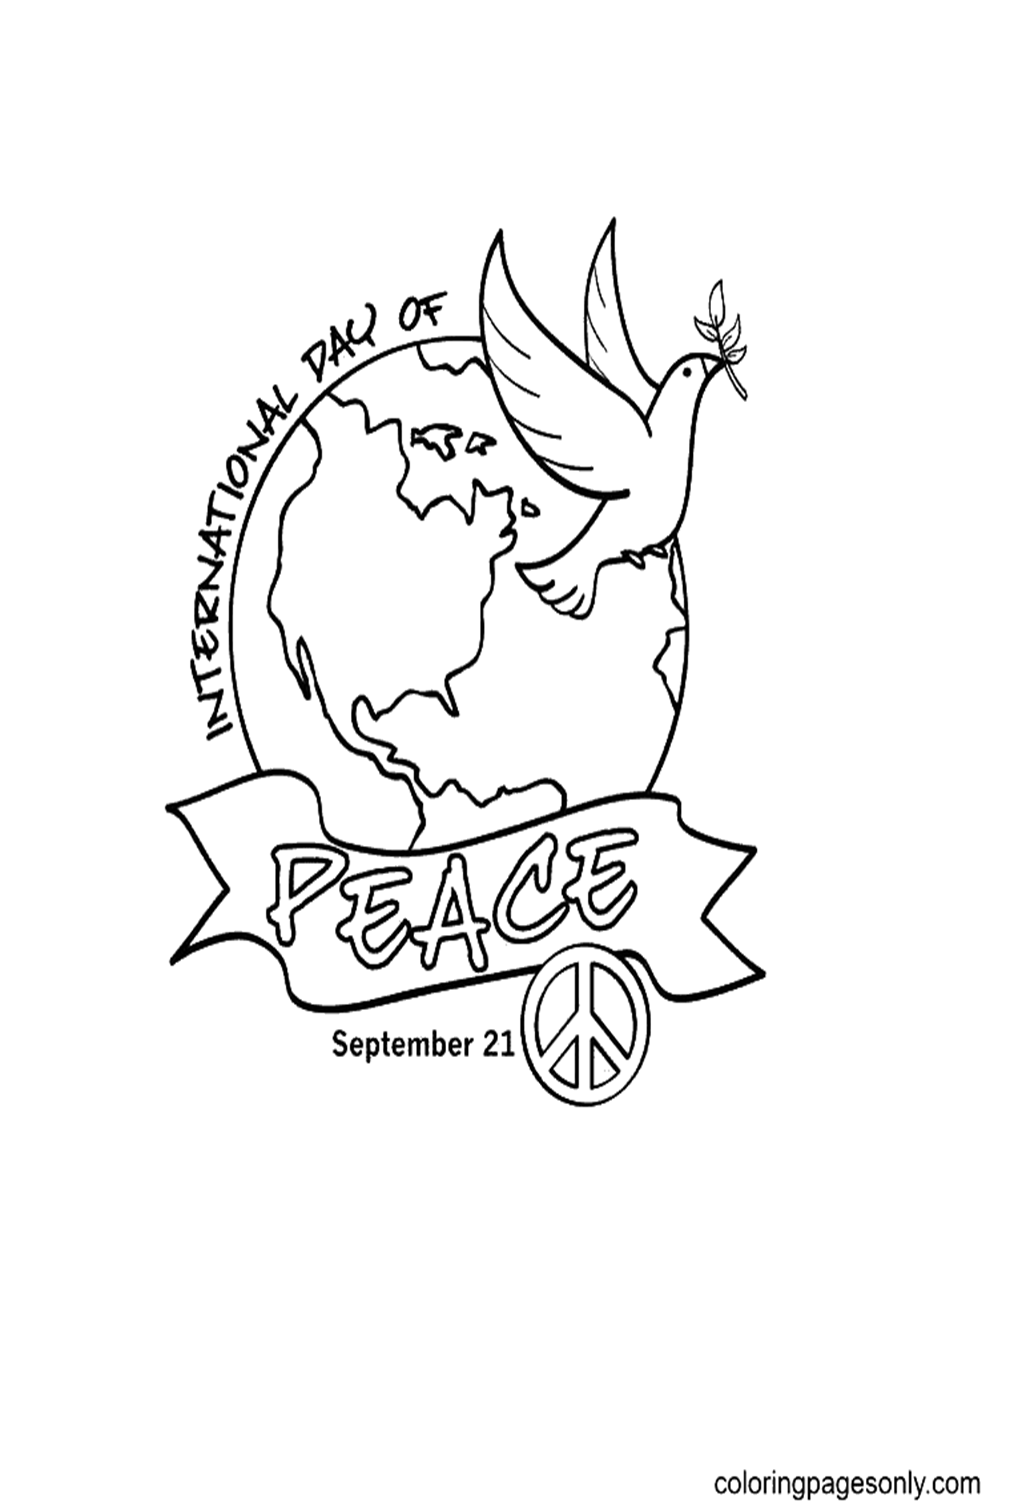 Internationale Dag van de Vrede afgeleid van Internationale Dag van de Vrede